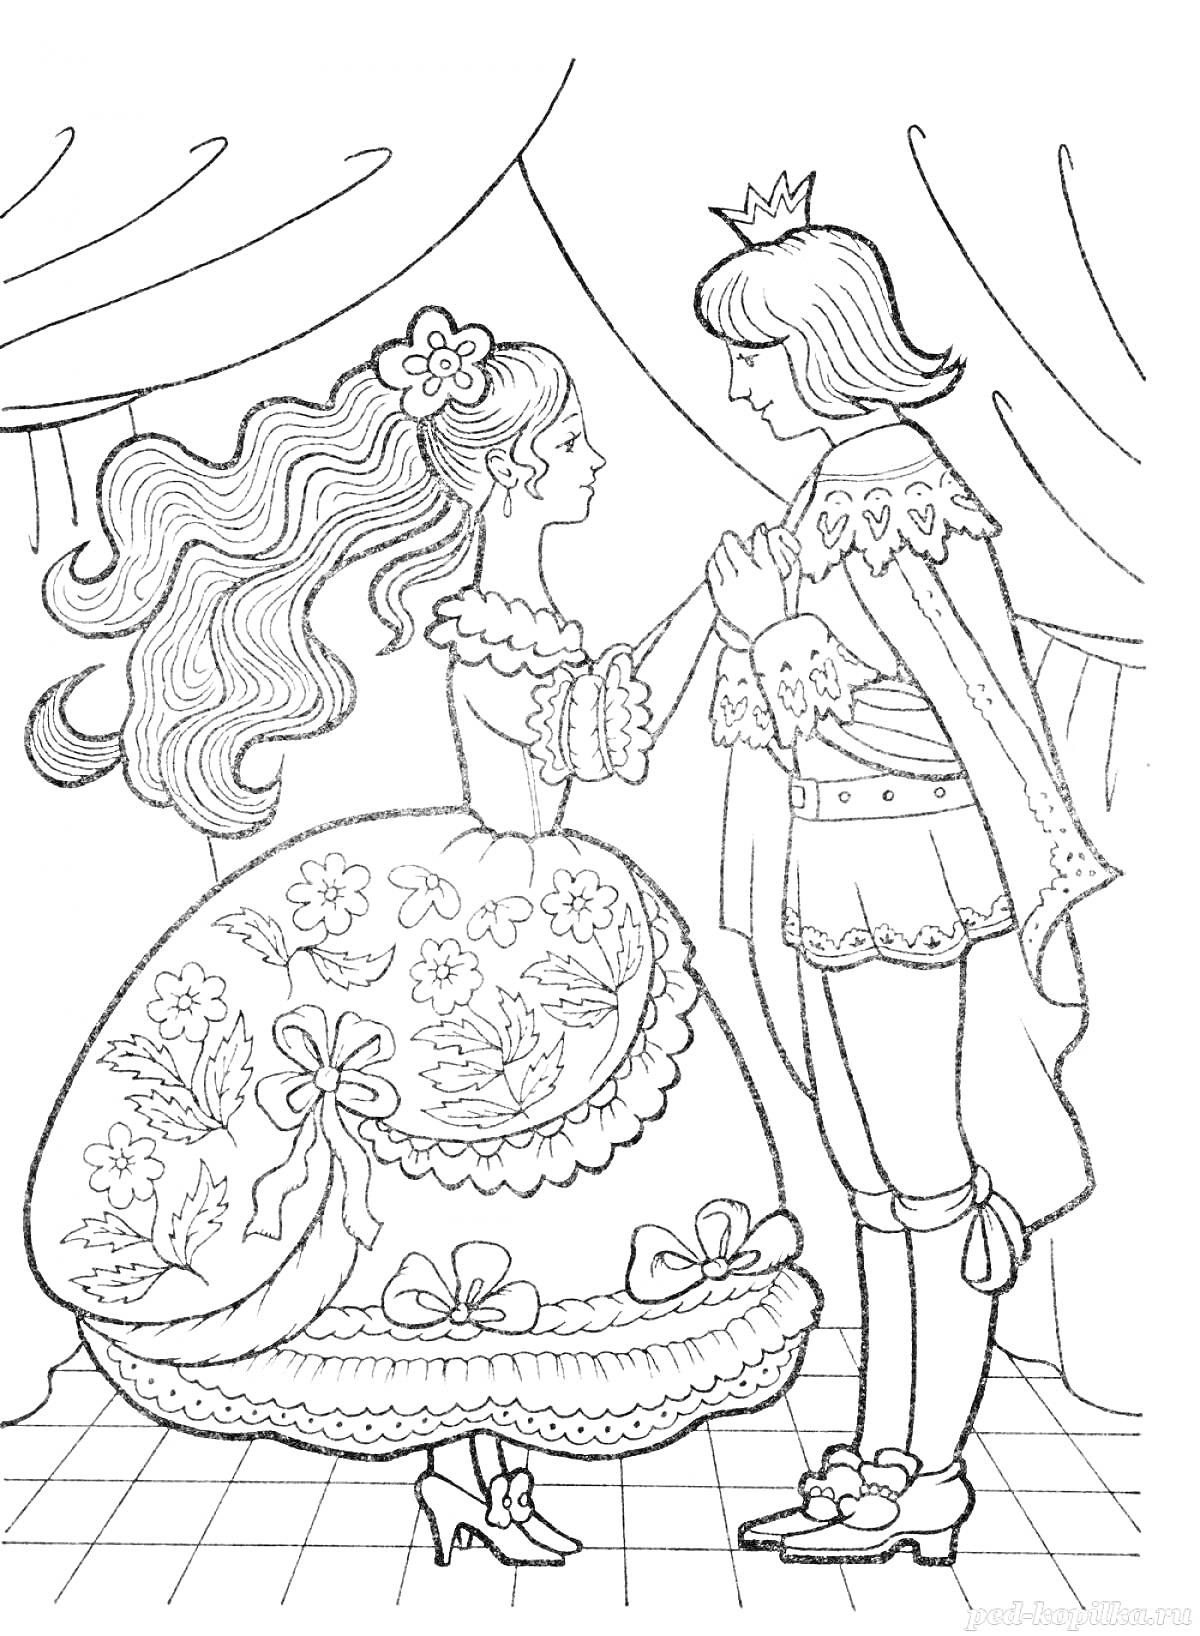 Принц и принцесса на балу, стоящие на клетчатом полу, фон с занавесами